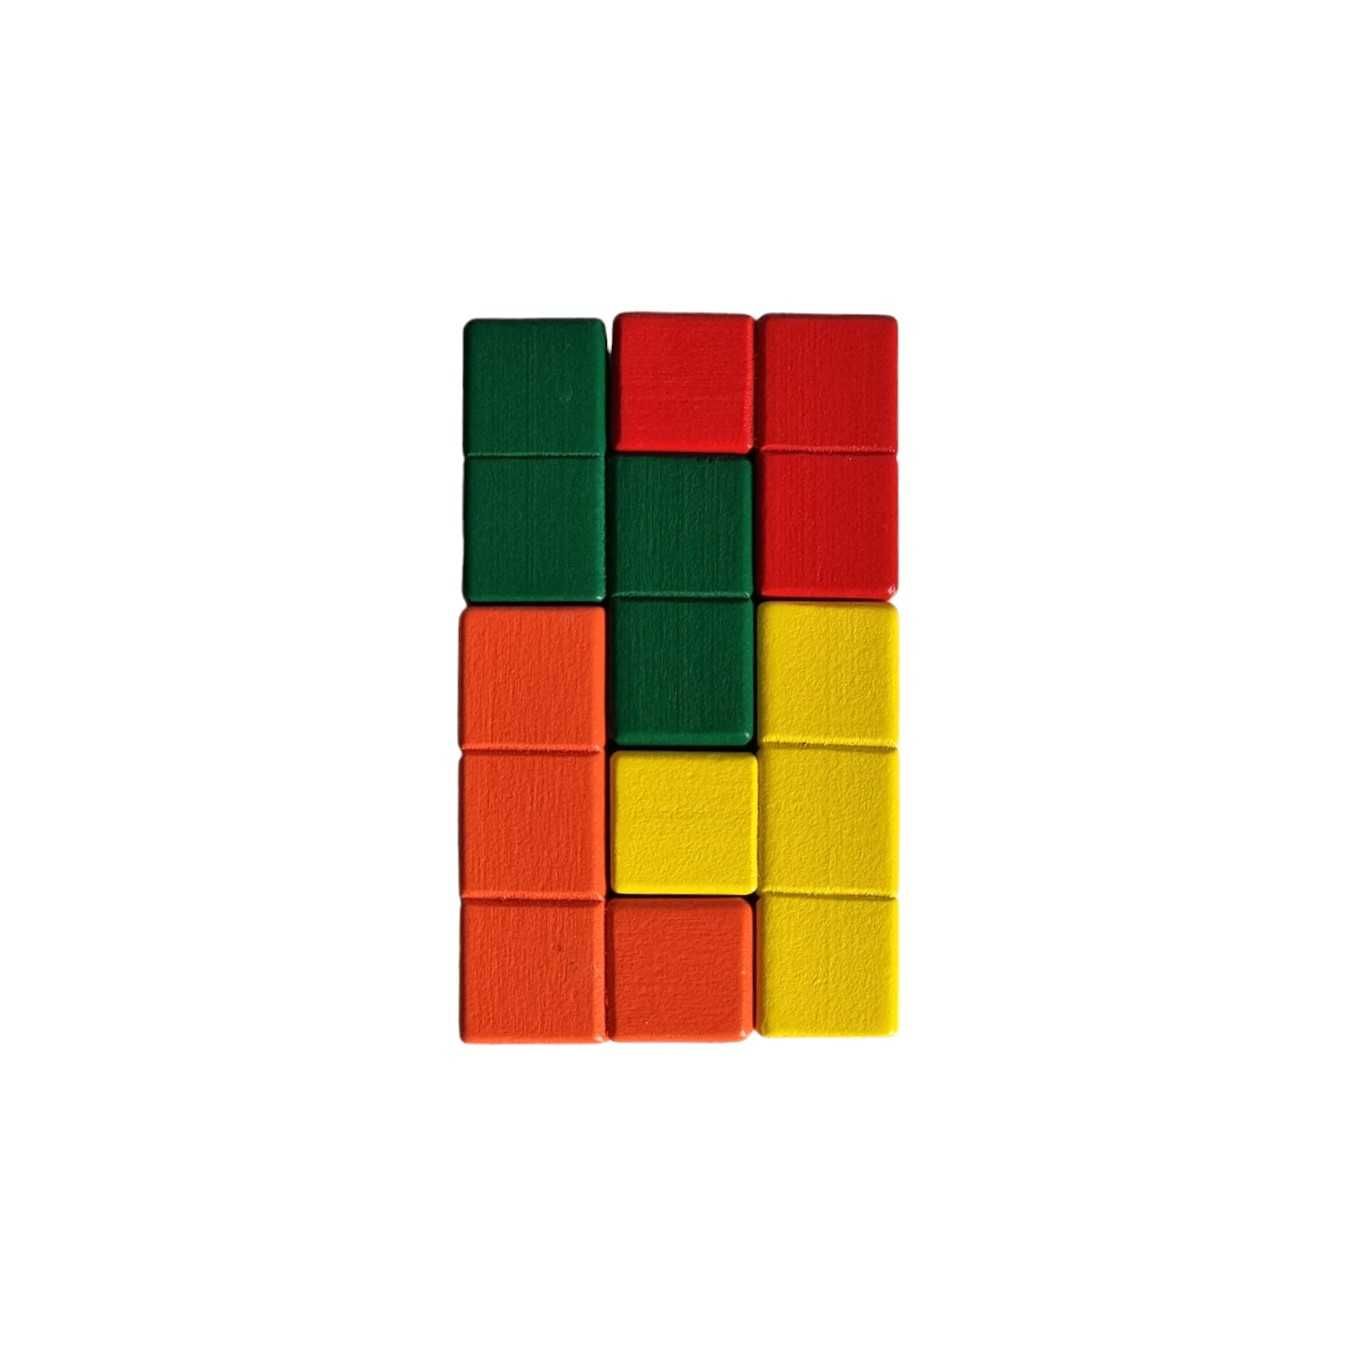 Cub 3D puzzle educational, 6X6X6cm